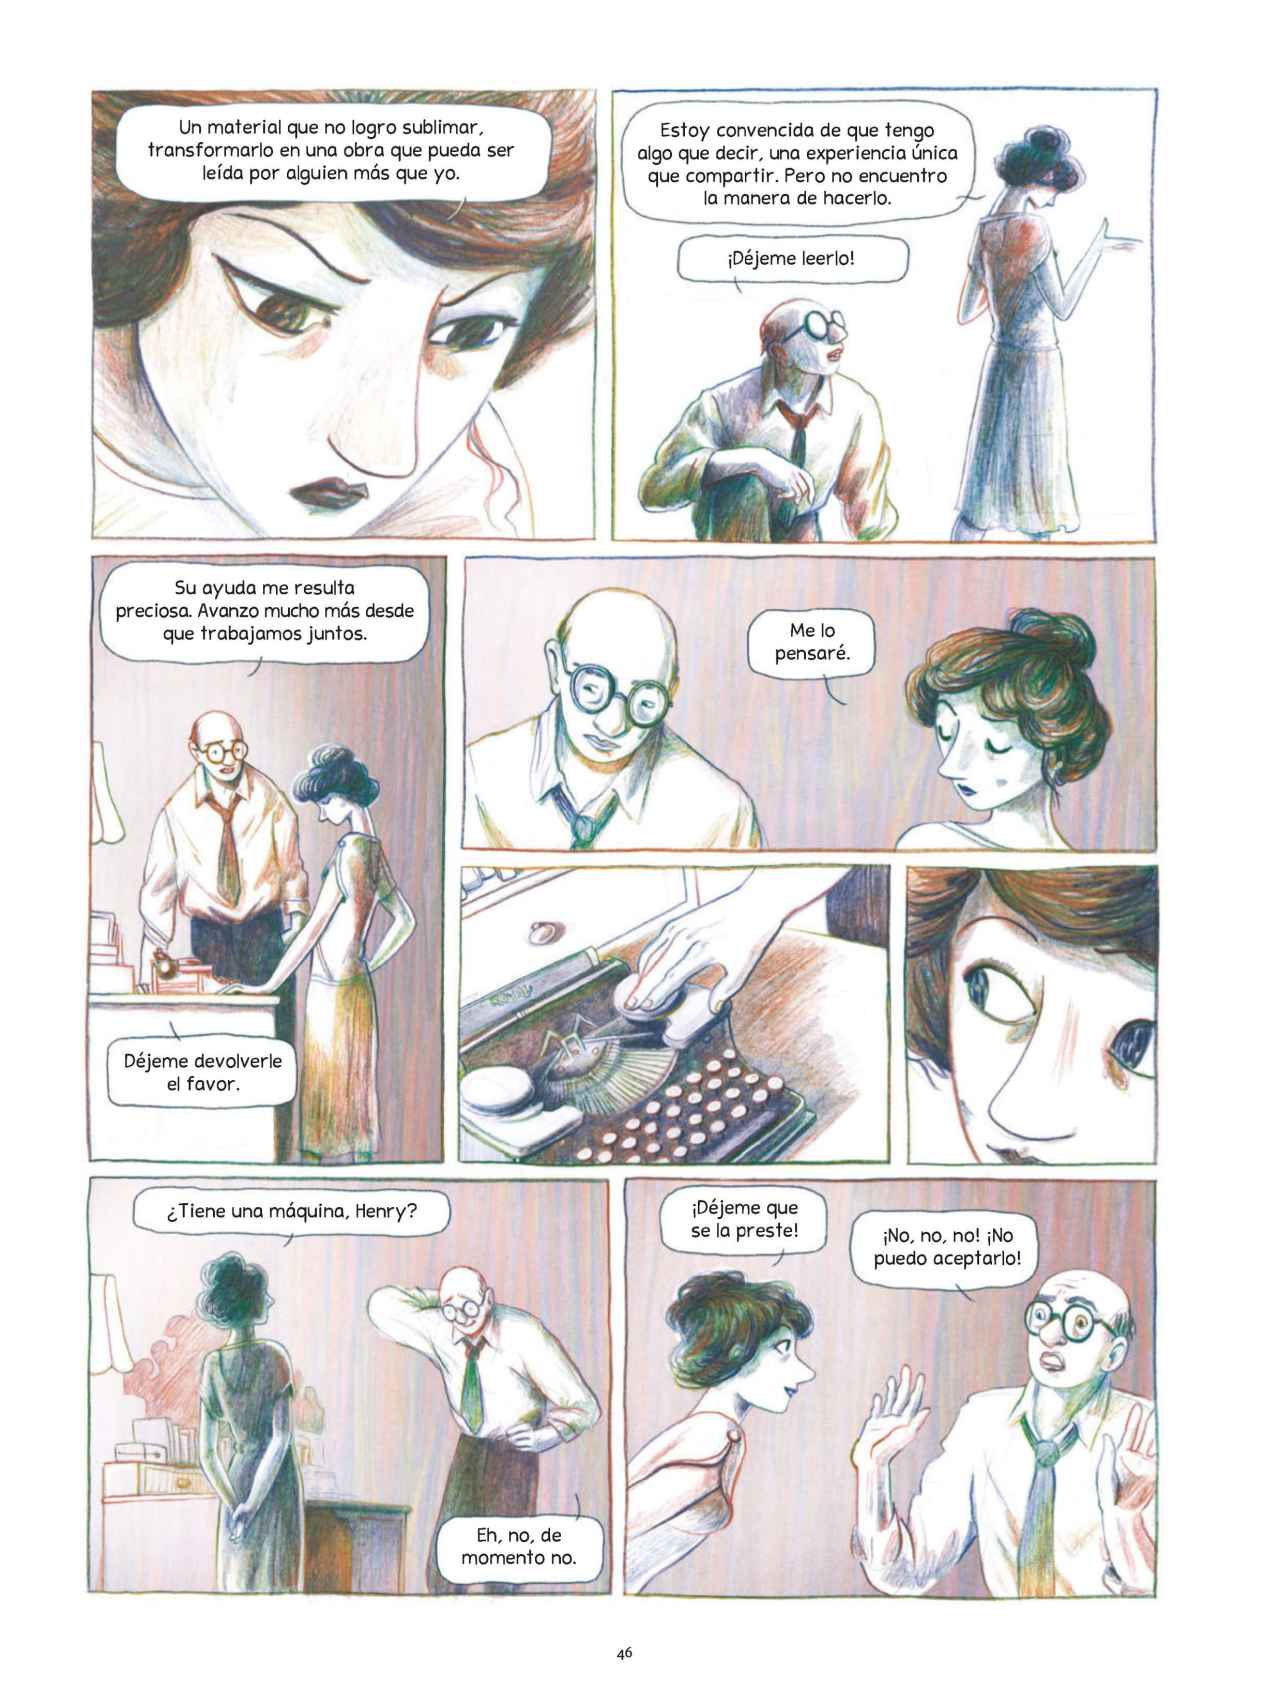 Una de las páginas del cómic sobre Anaïs Nin.